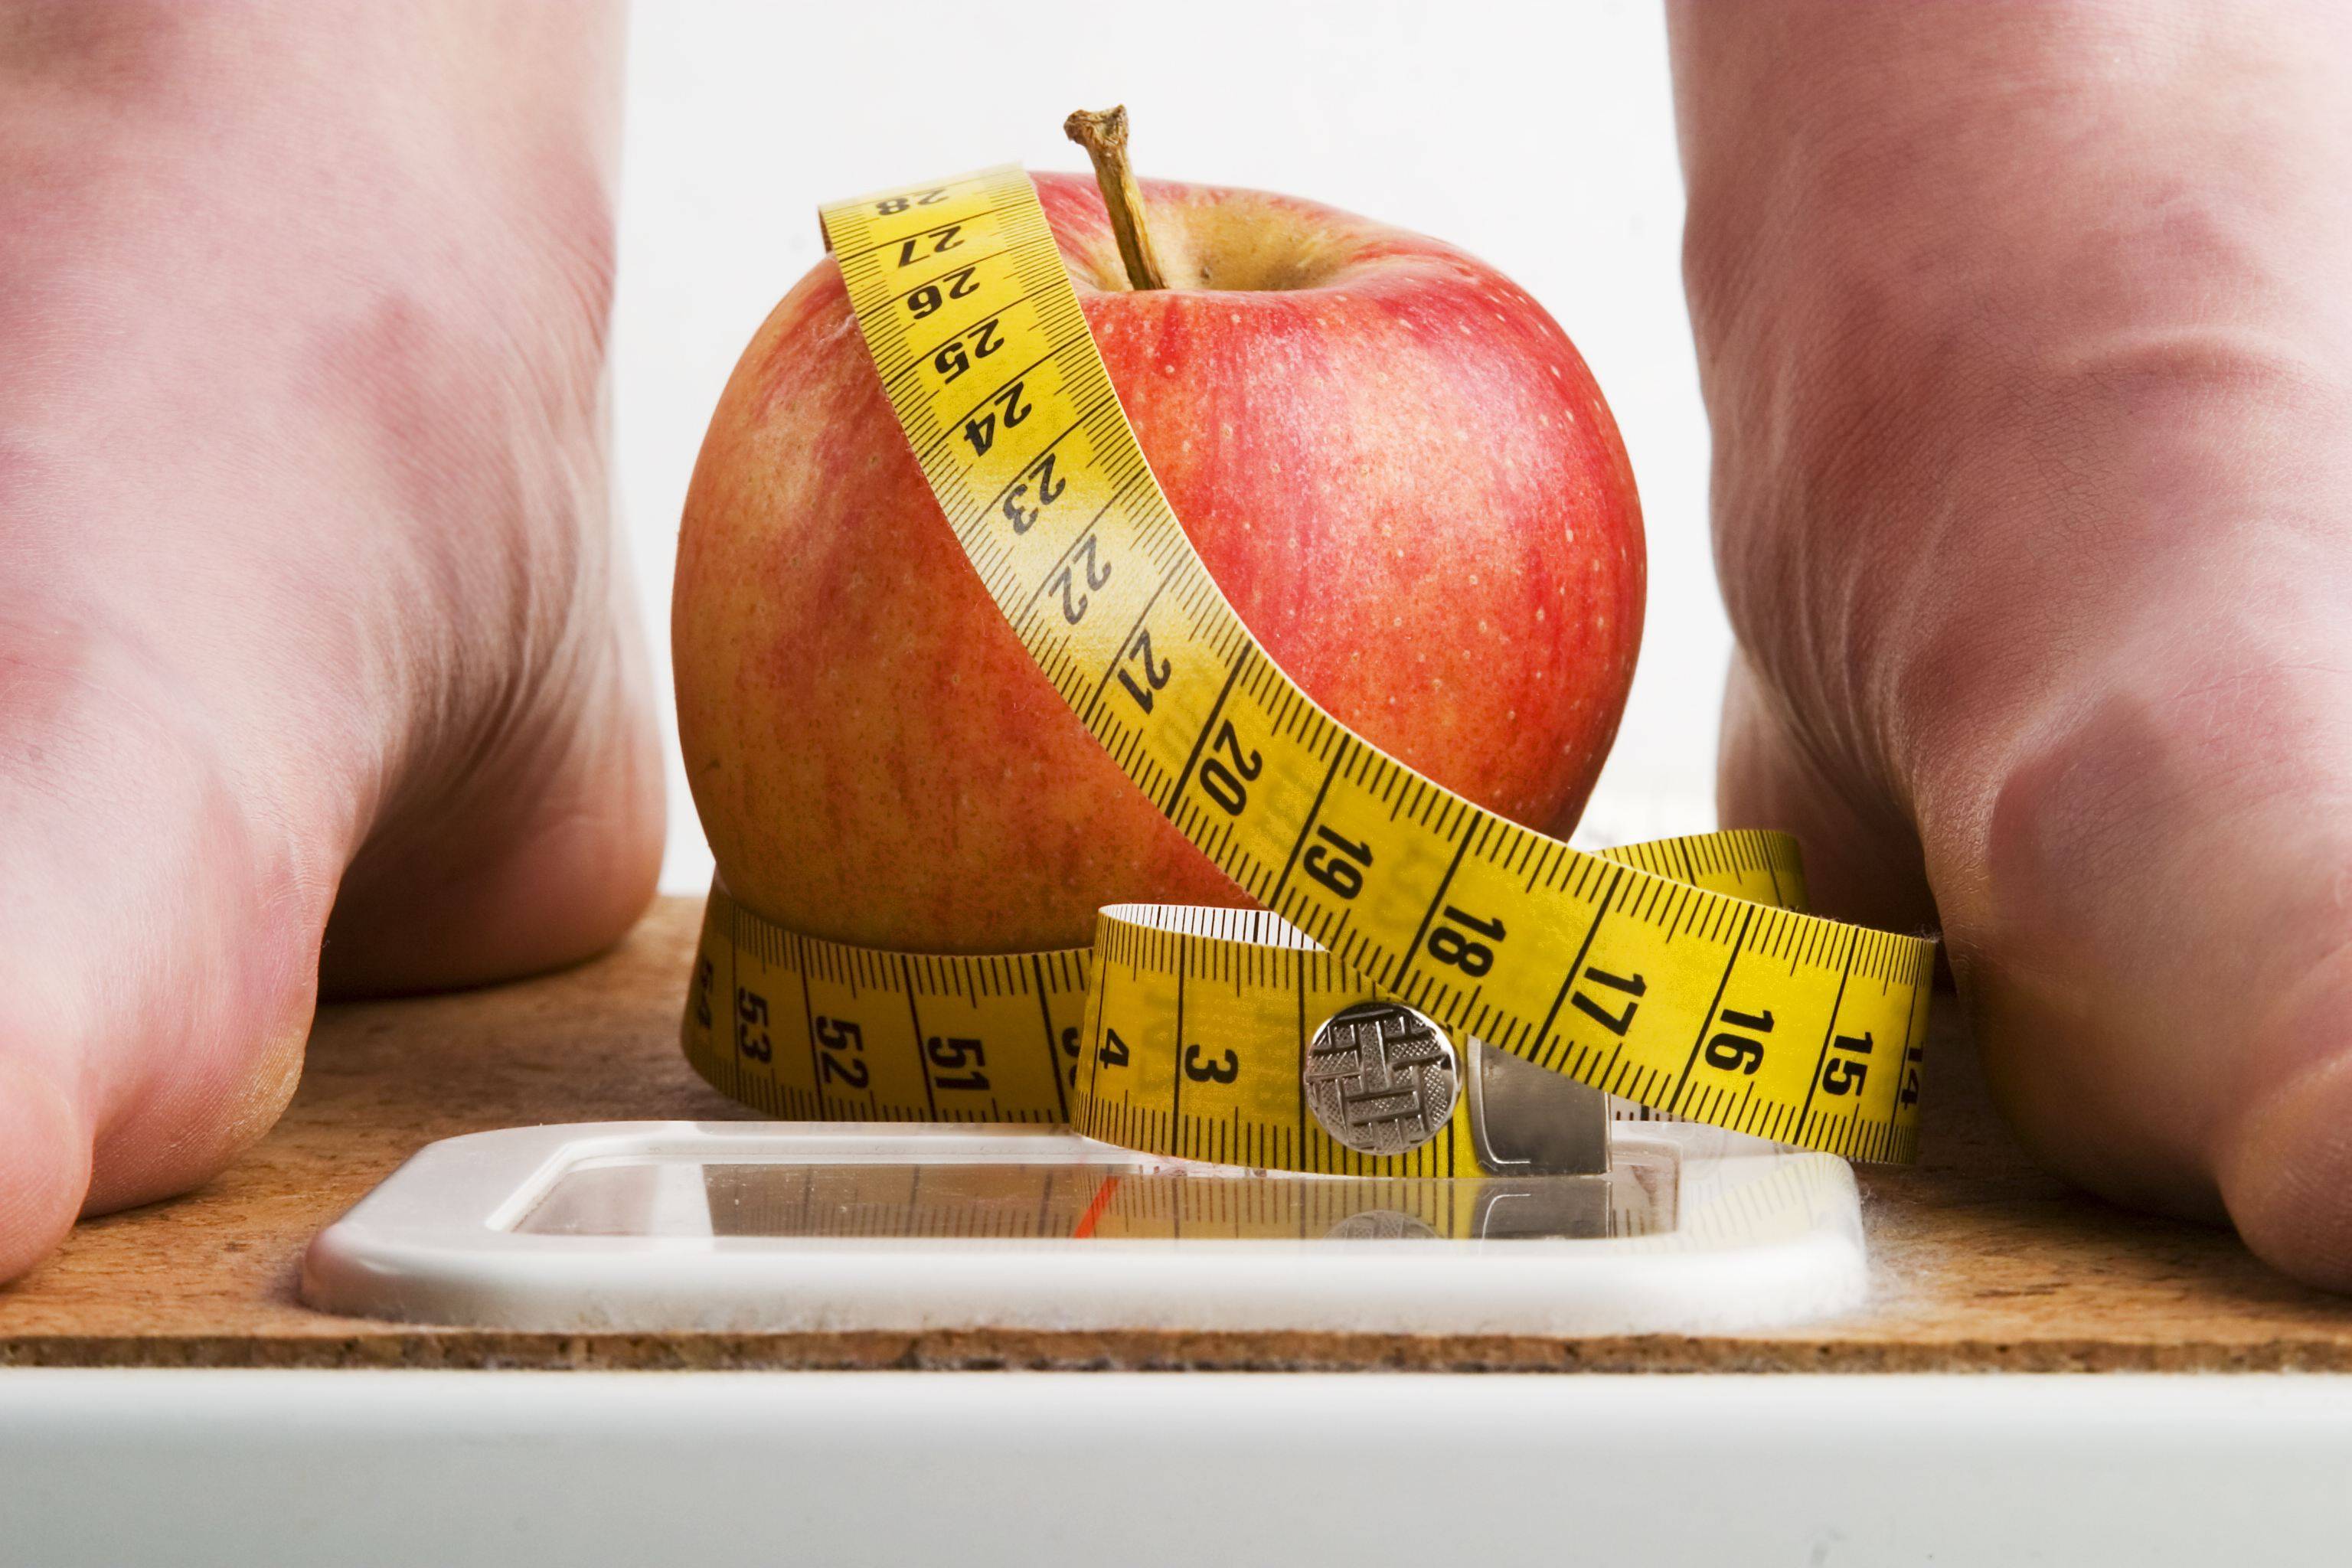 12 мифов о диетах: заблуждения при похудении, реальность